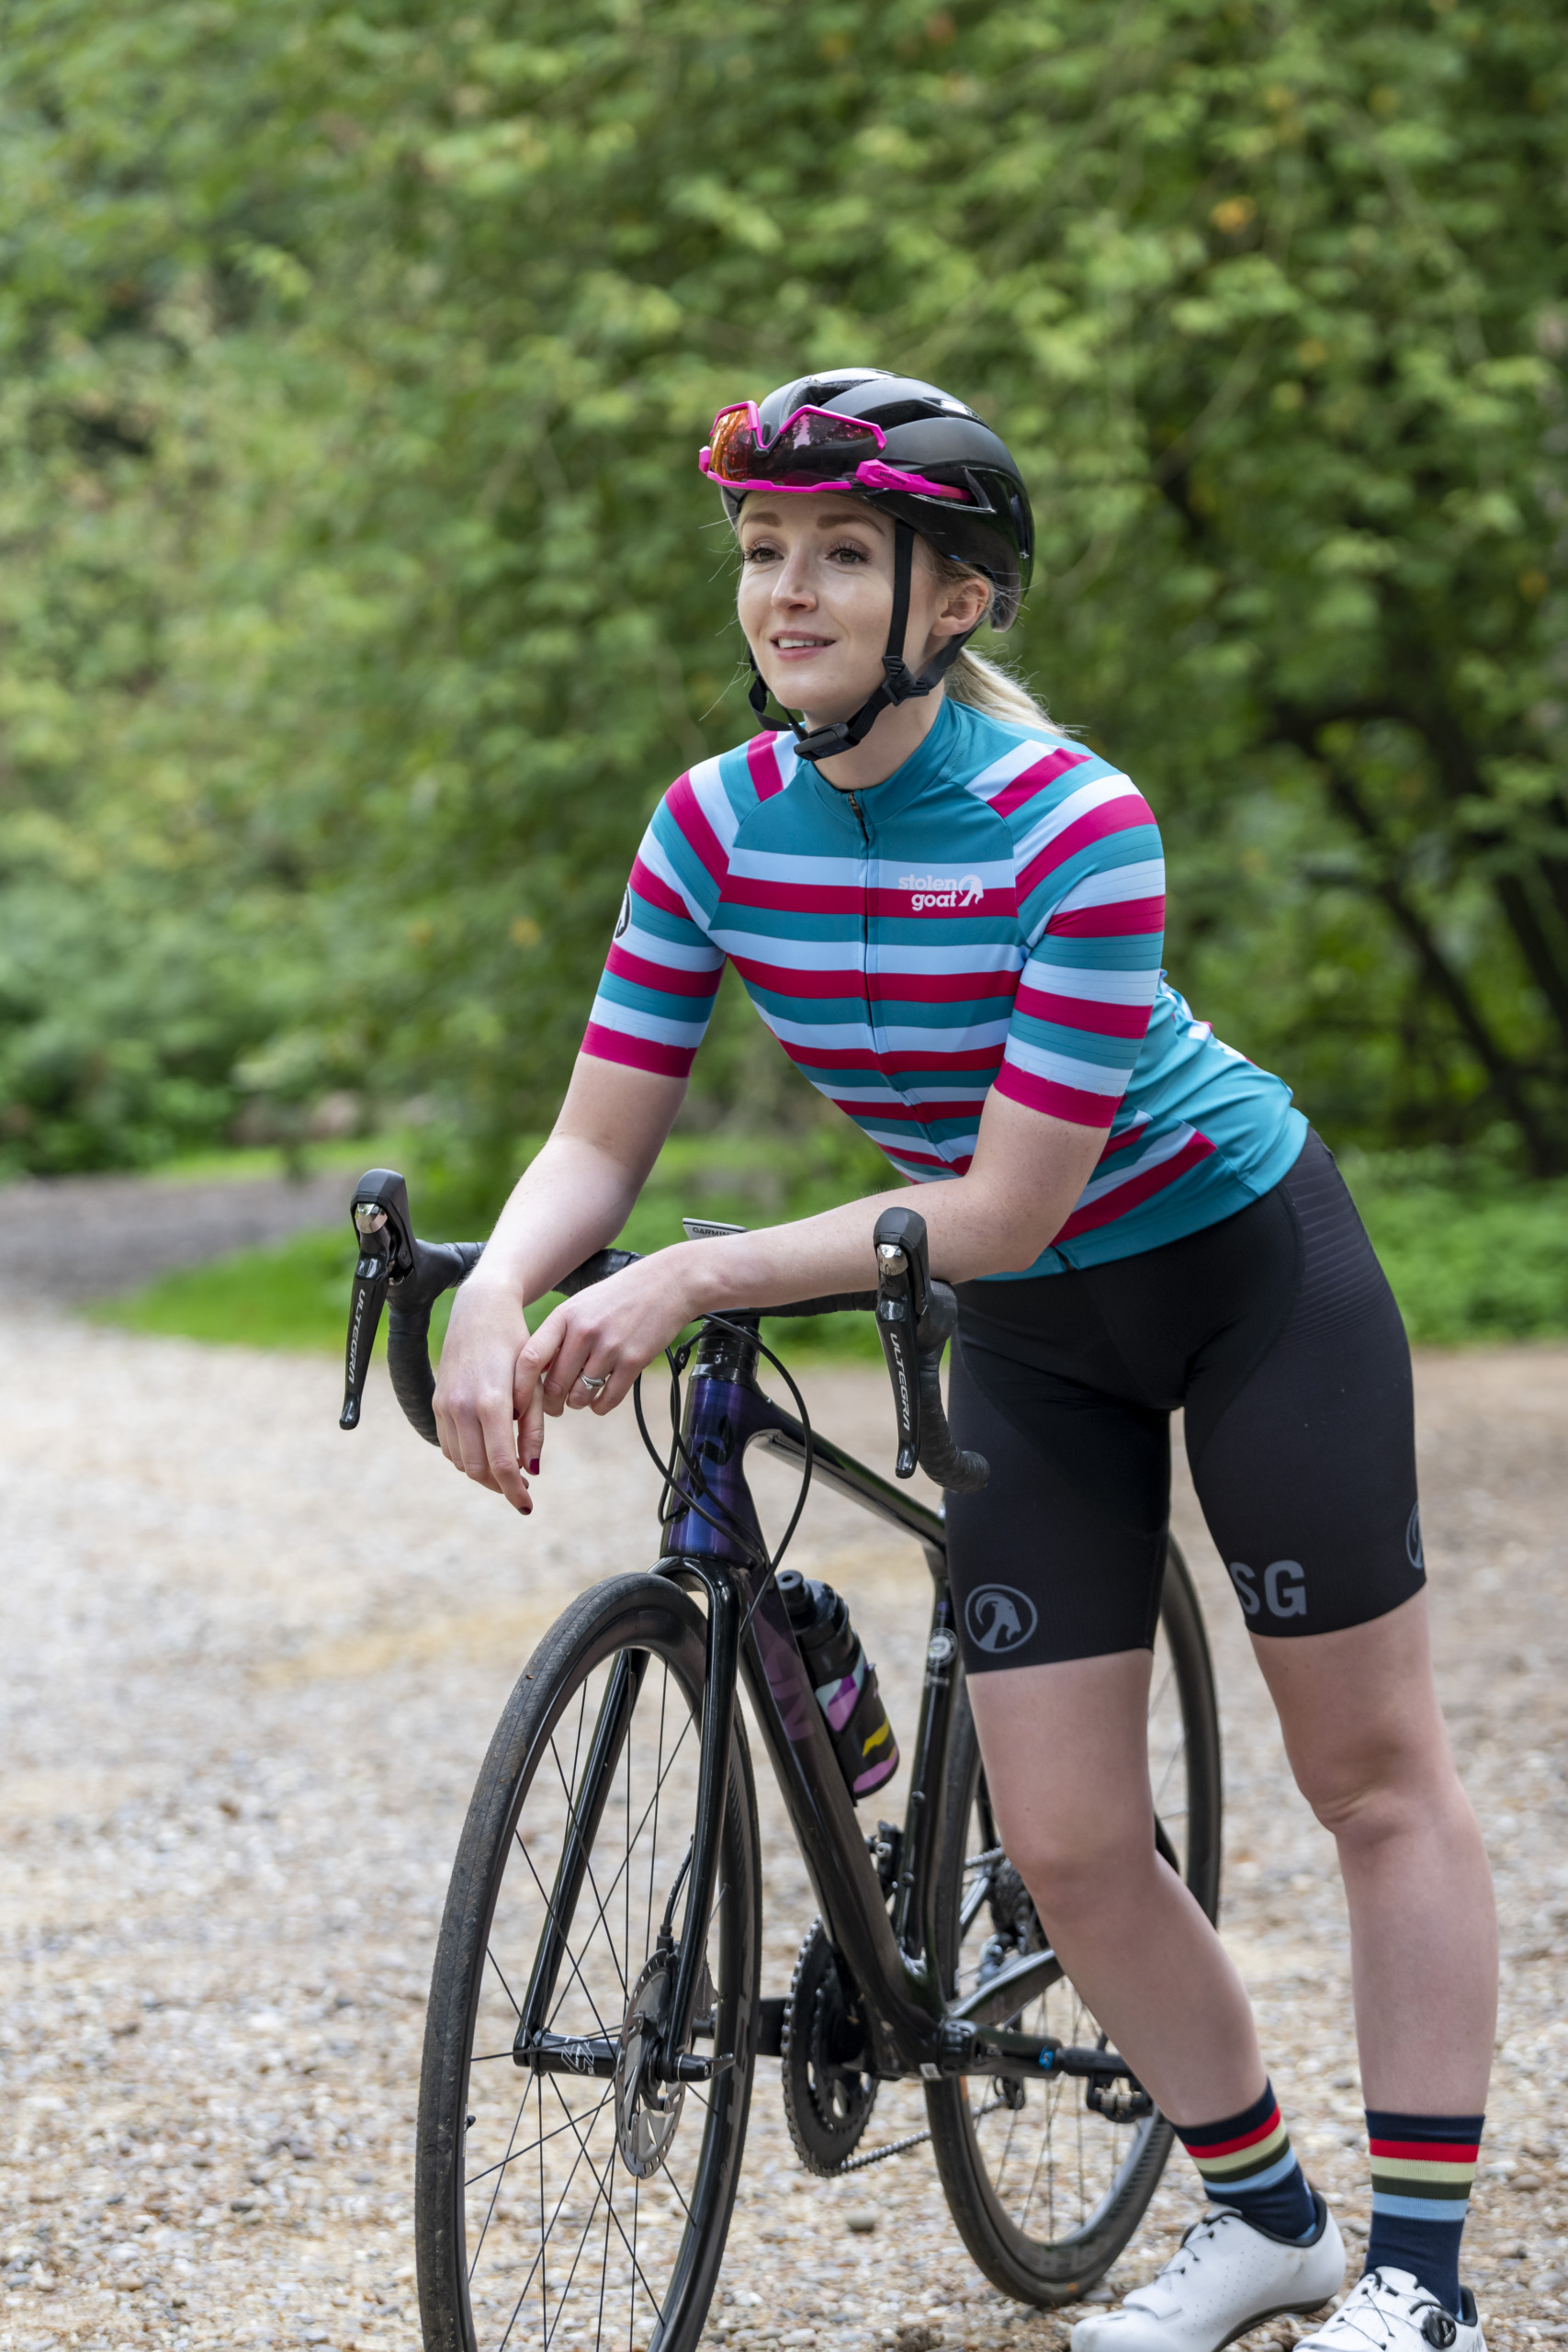 Woman leaning on bike wearing Roxy jersey